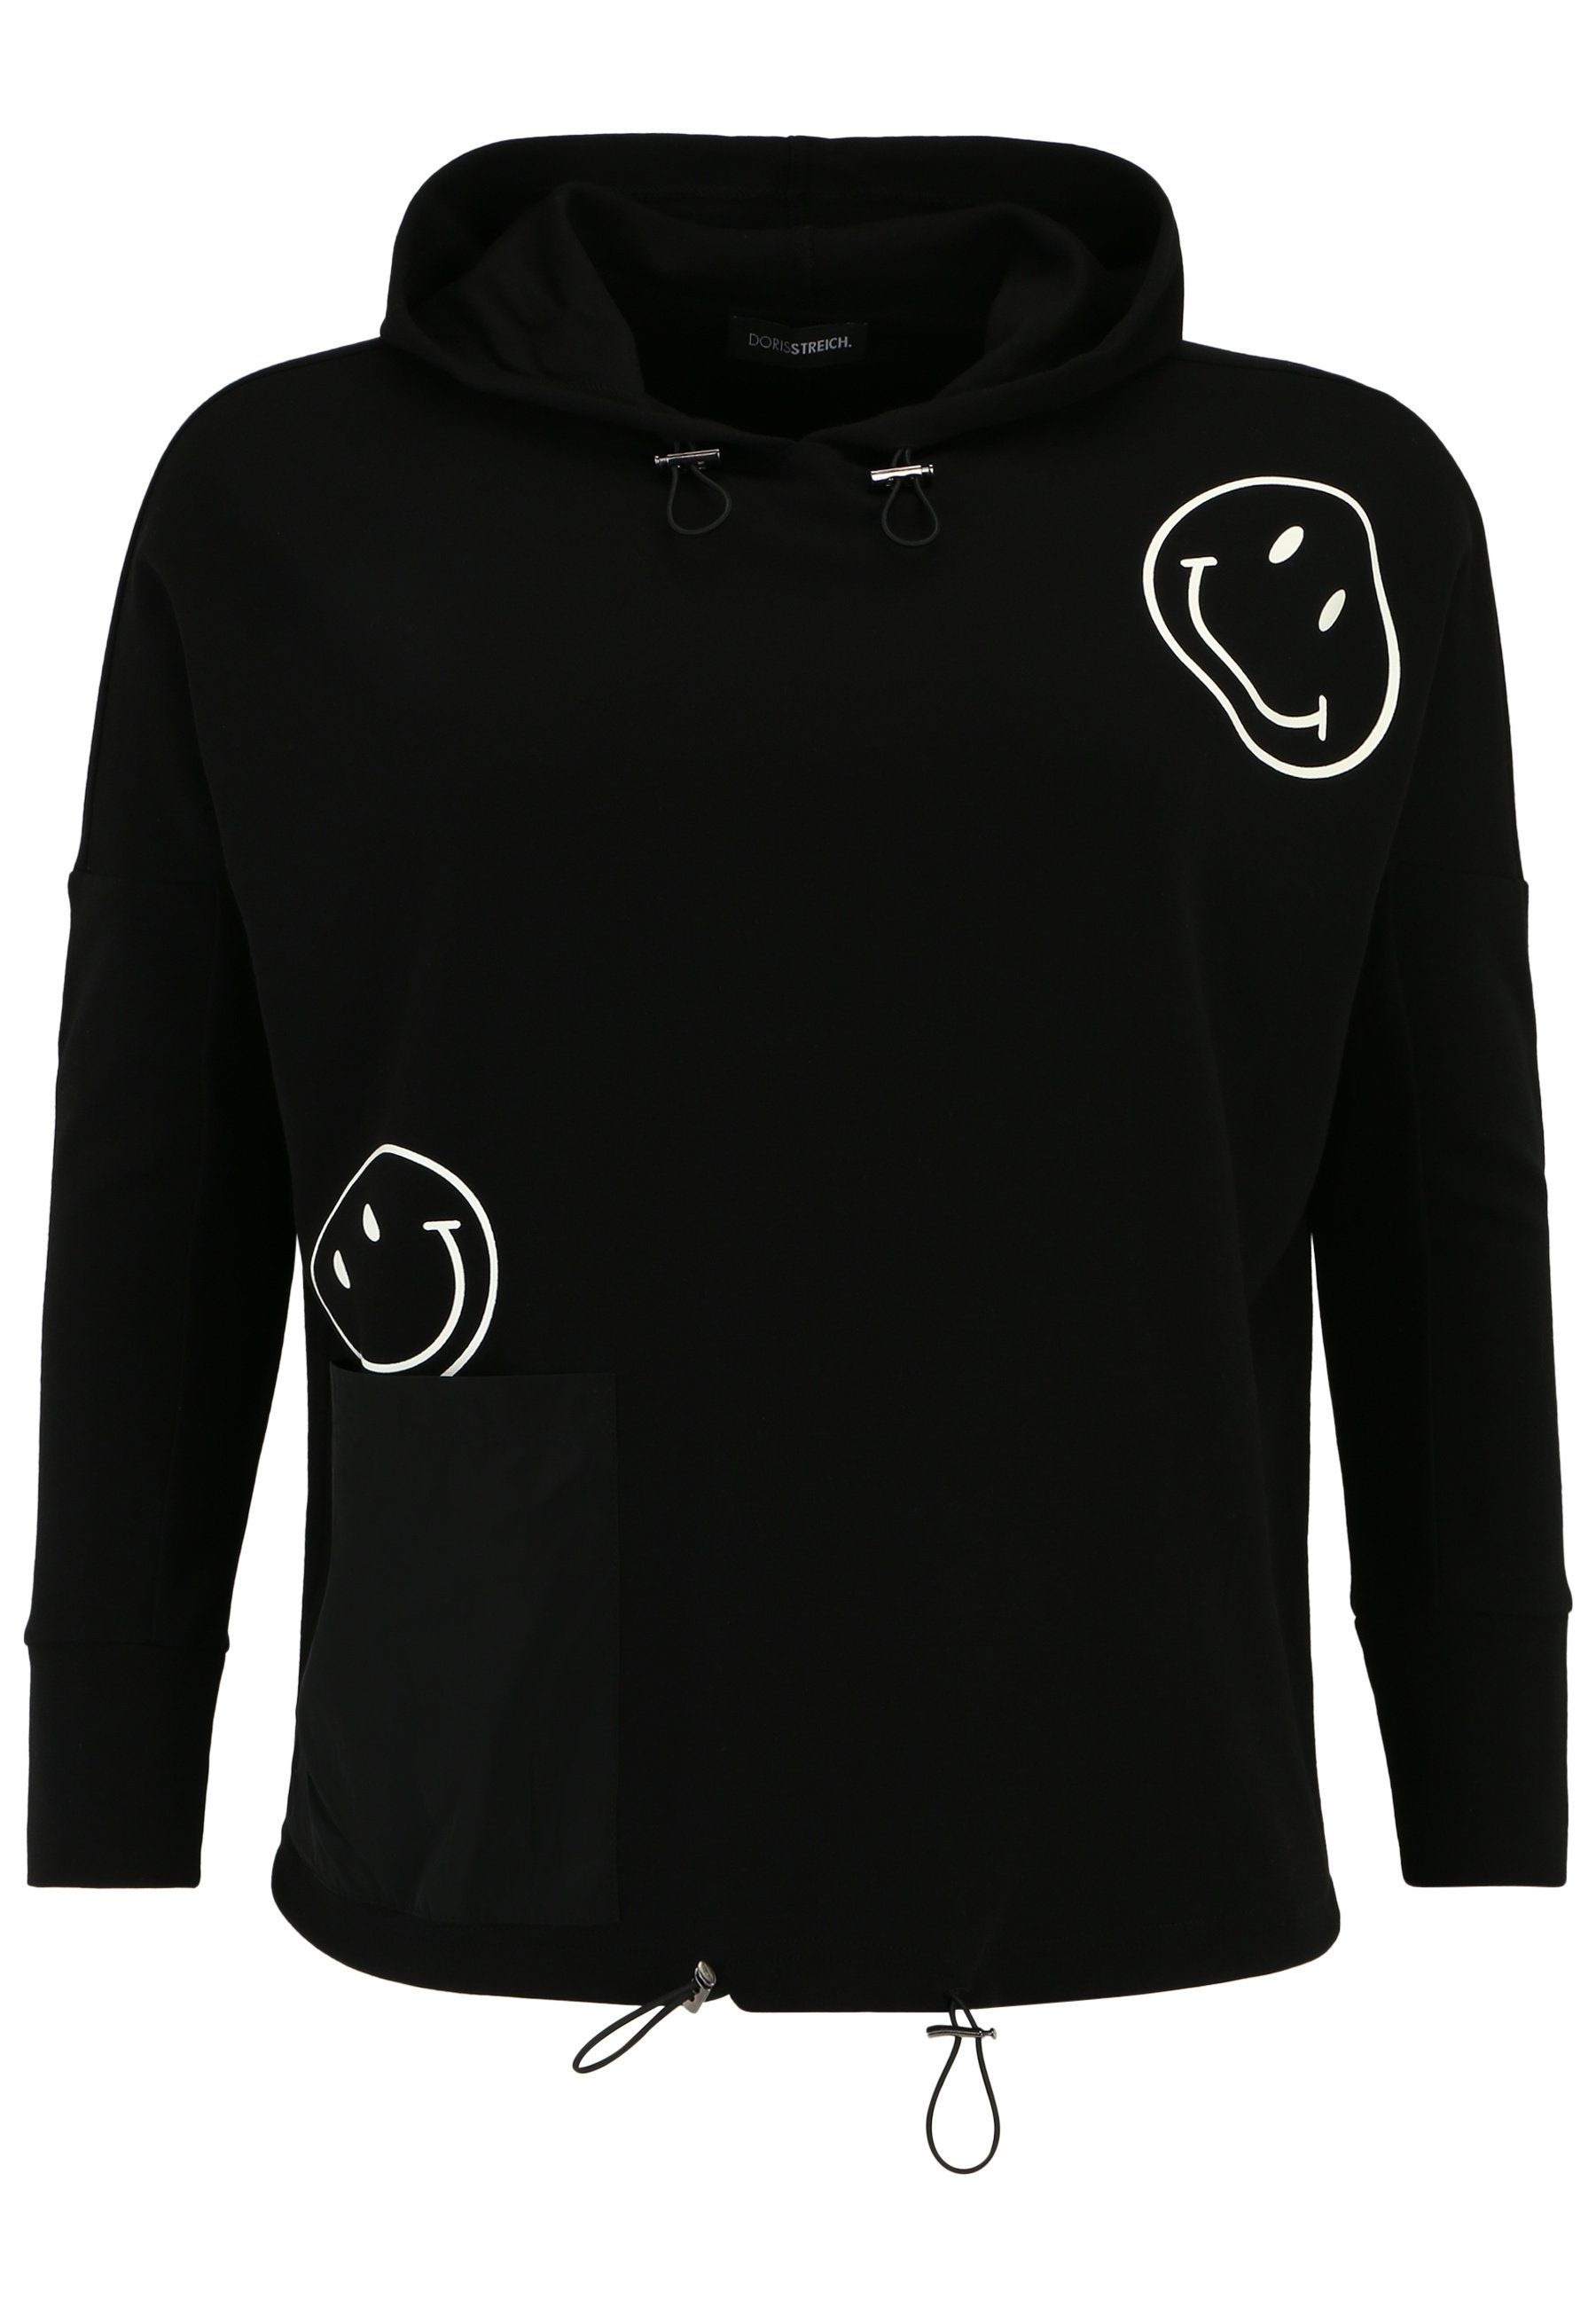 Doris Streich Longsleeve Sweatshirt mit Hoody und Smiley-Motiv mit modernem Design